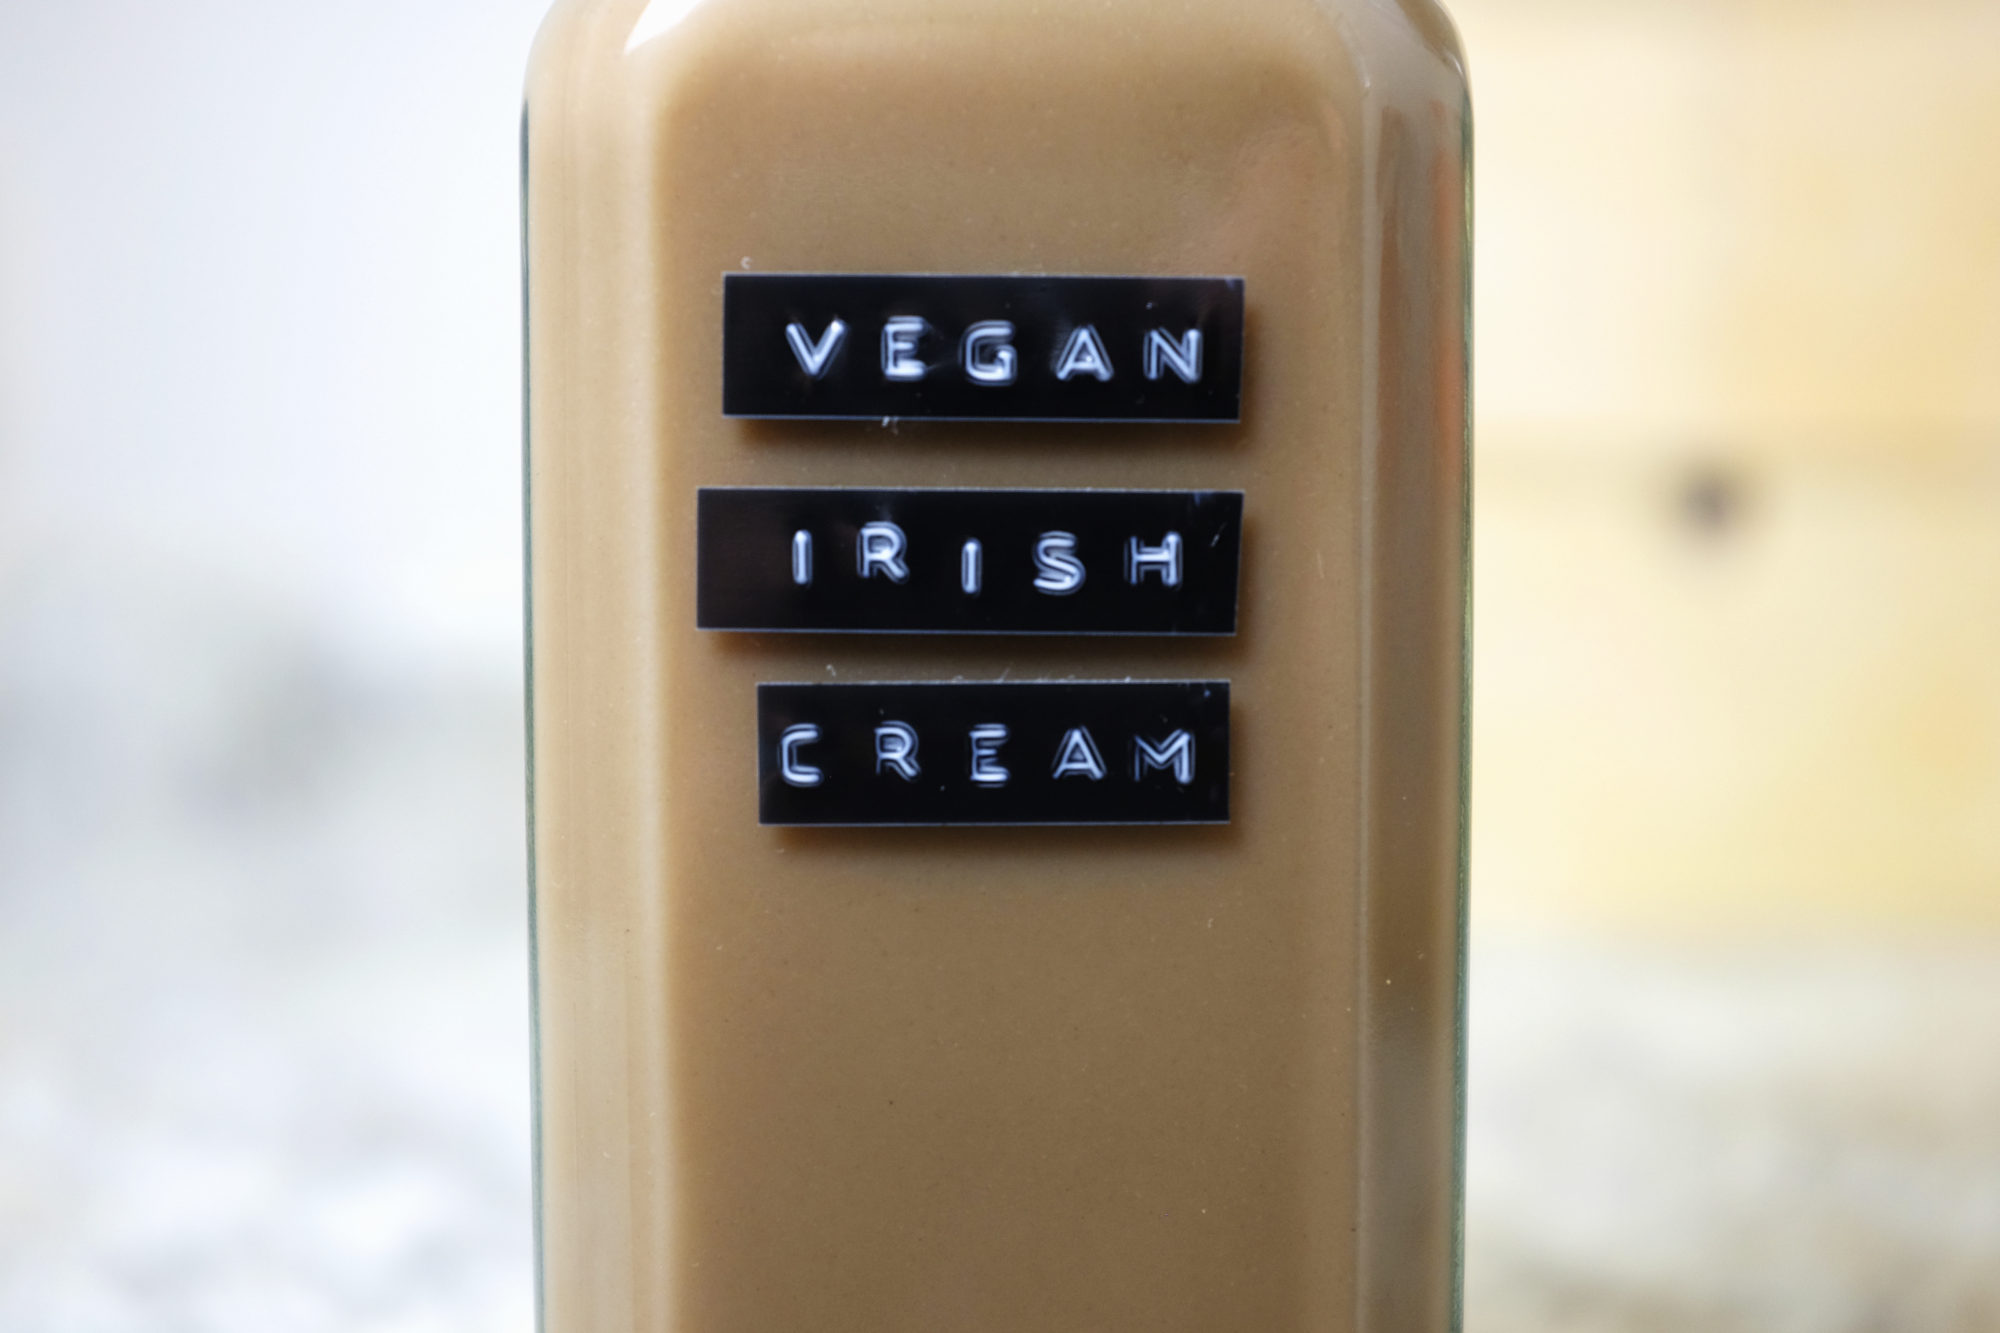 Glass jar that reads Vegan Irish Cream